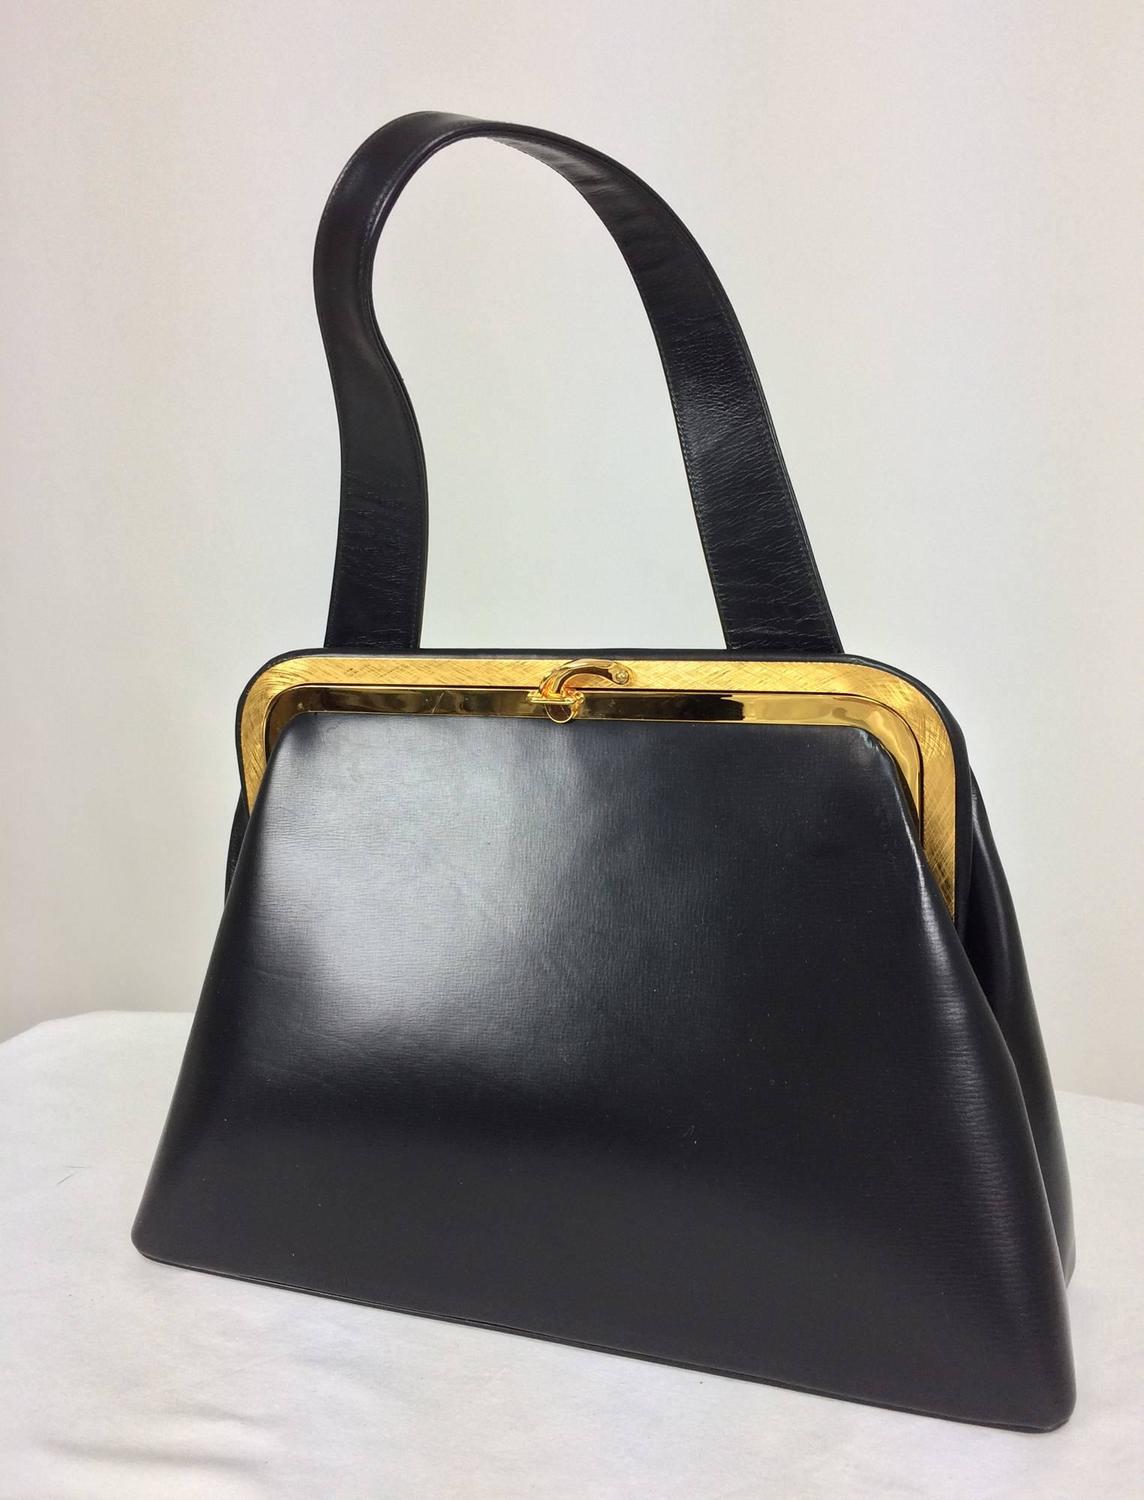 Bienen-Davis black box calf structured handbag with gold hardware 1950s ...